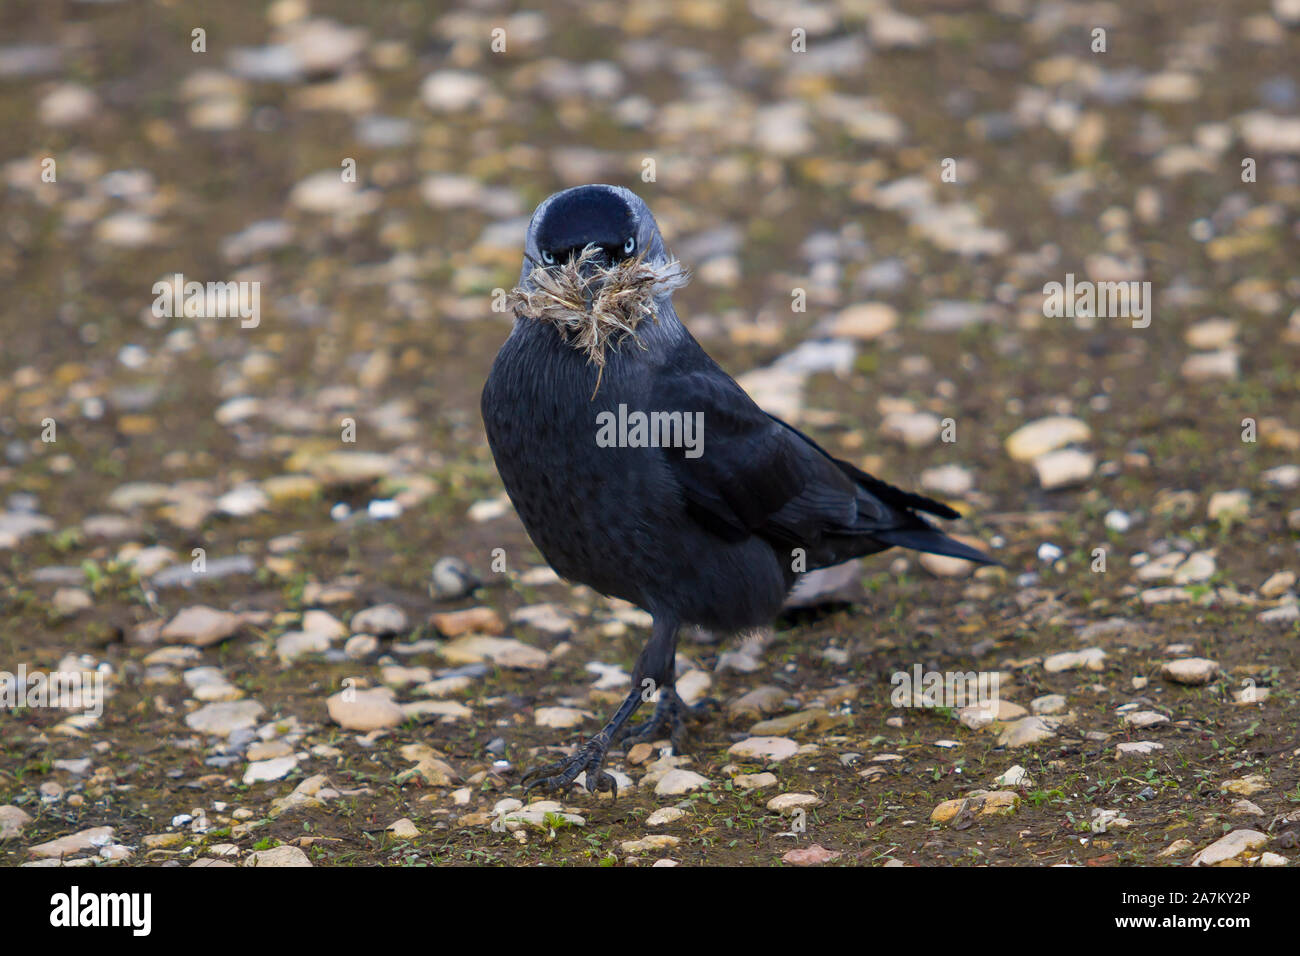 Wilder britischer Dohlenvogel (Corvus monedula), der isoliert auf dem Boden steht und starrt, brütet Material im Schnabel. Britische Krähen, Corviden. Stockfoto